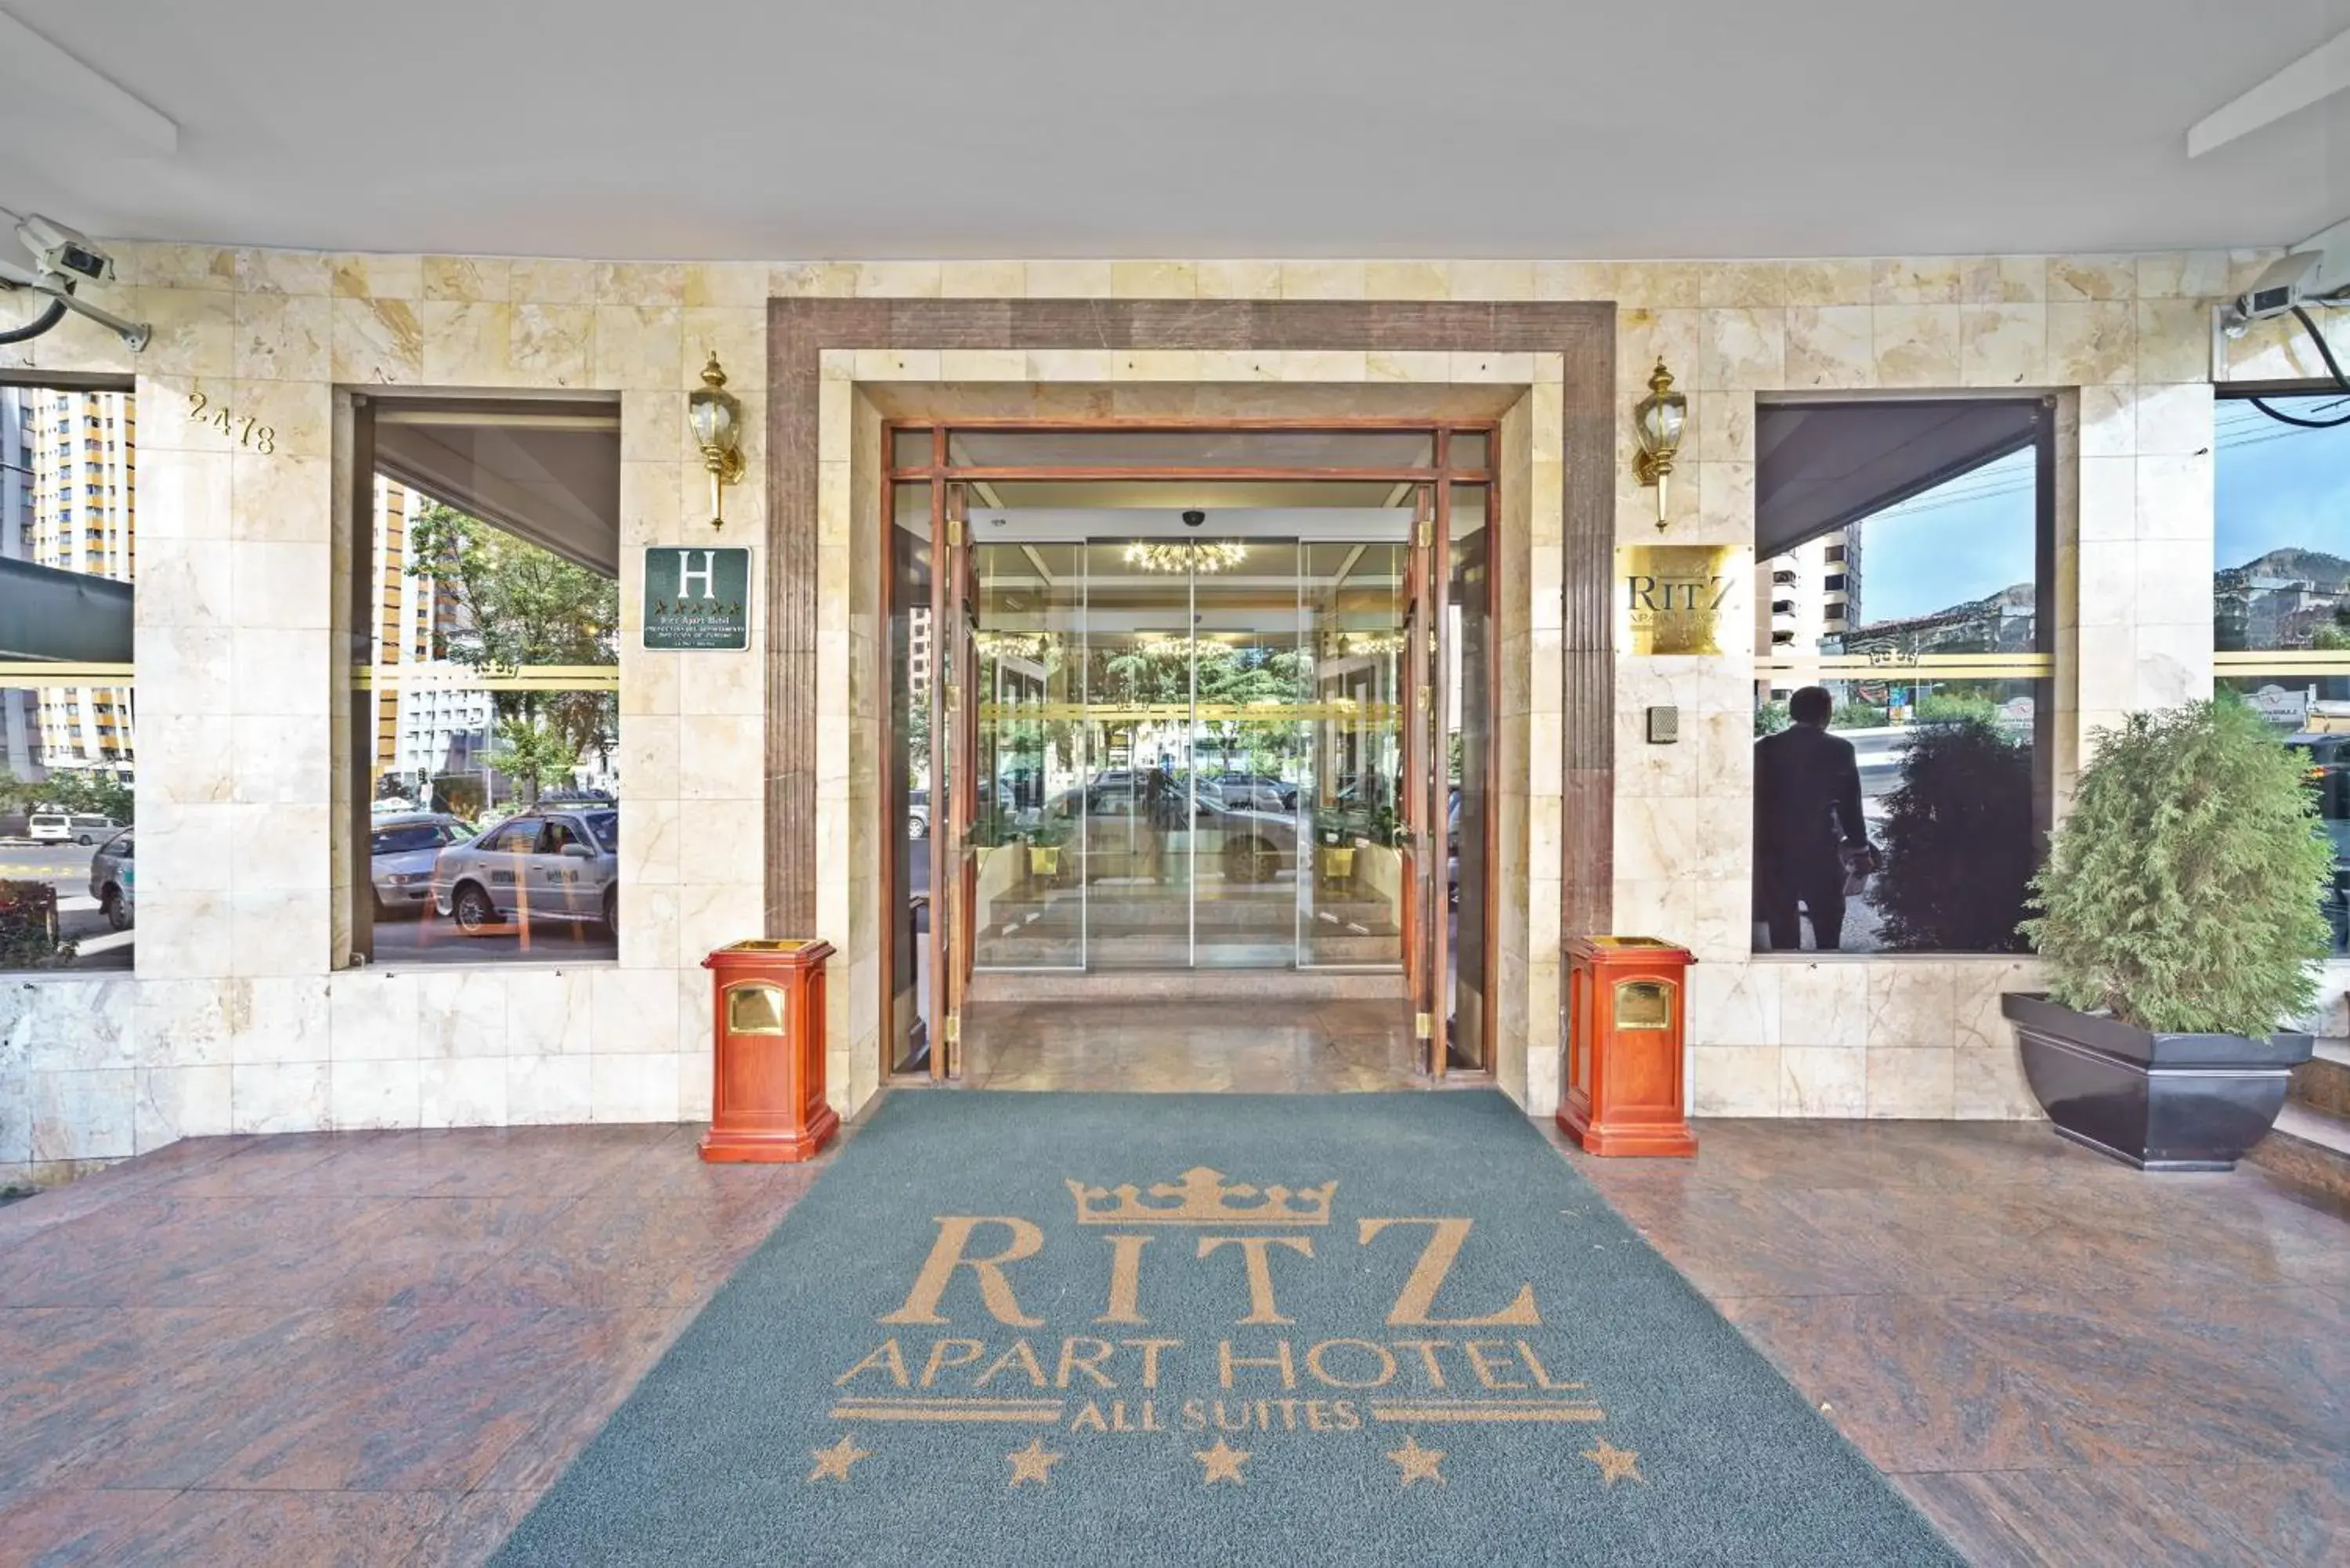 Facade/entrance in Ritz Apart Hotel